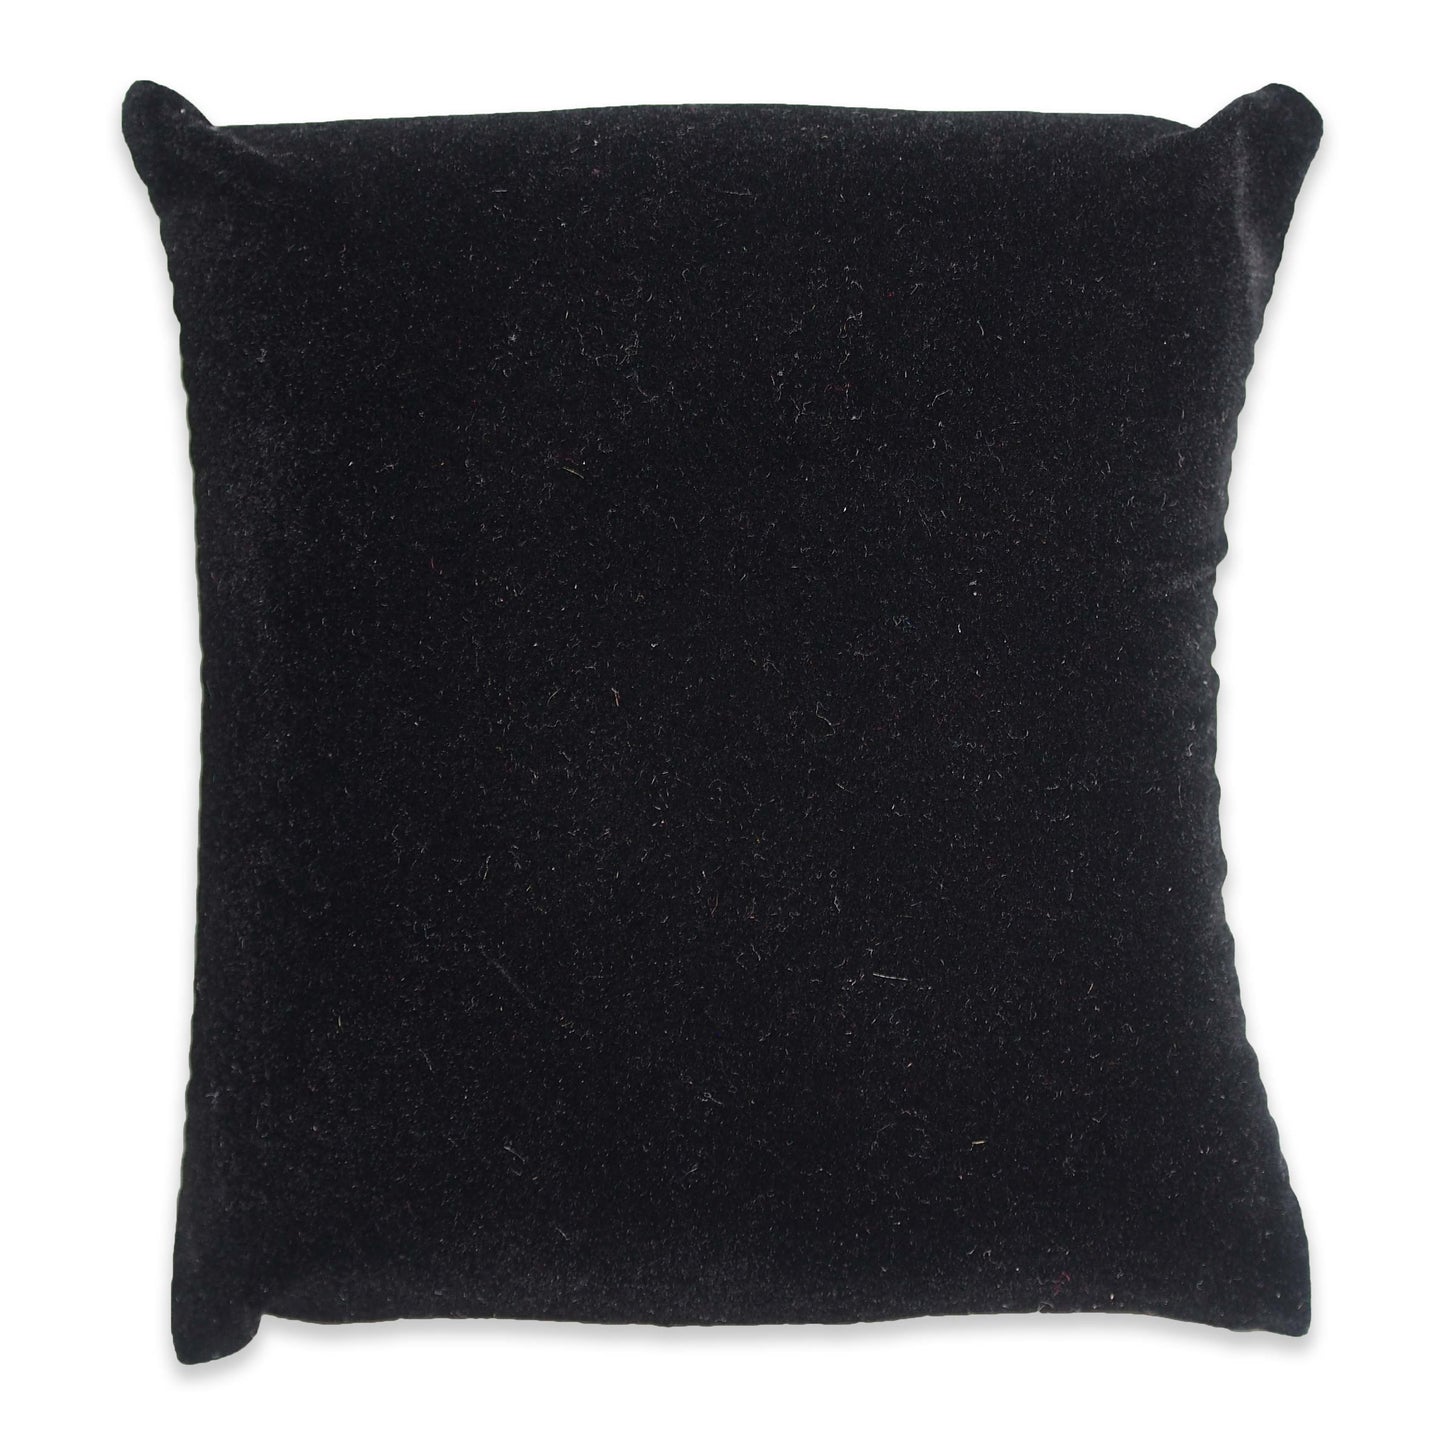 5" Black Velvet Pillow Displays